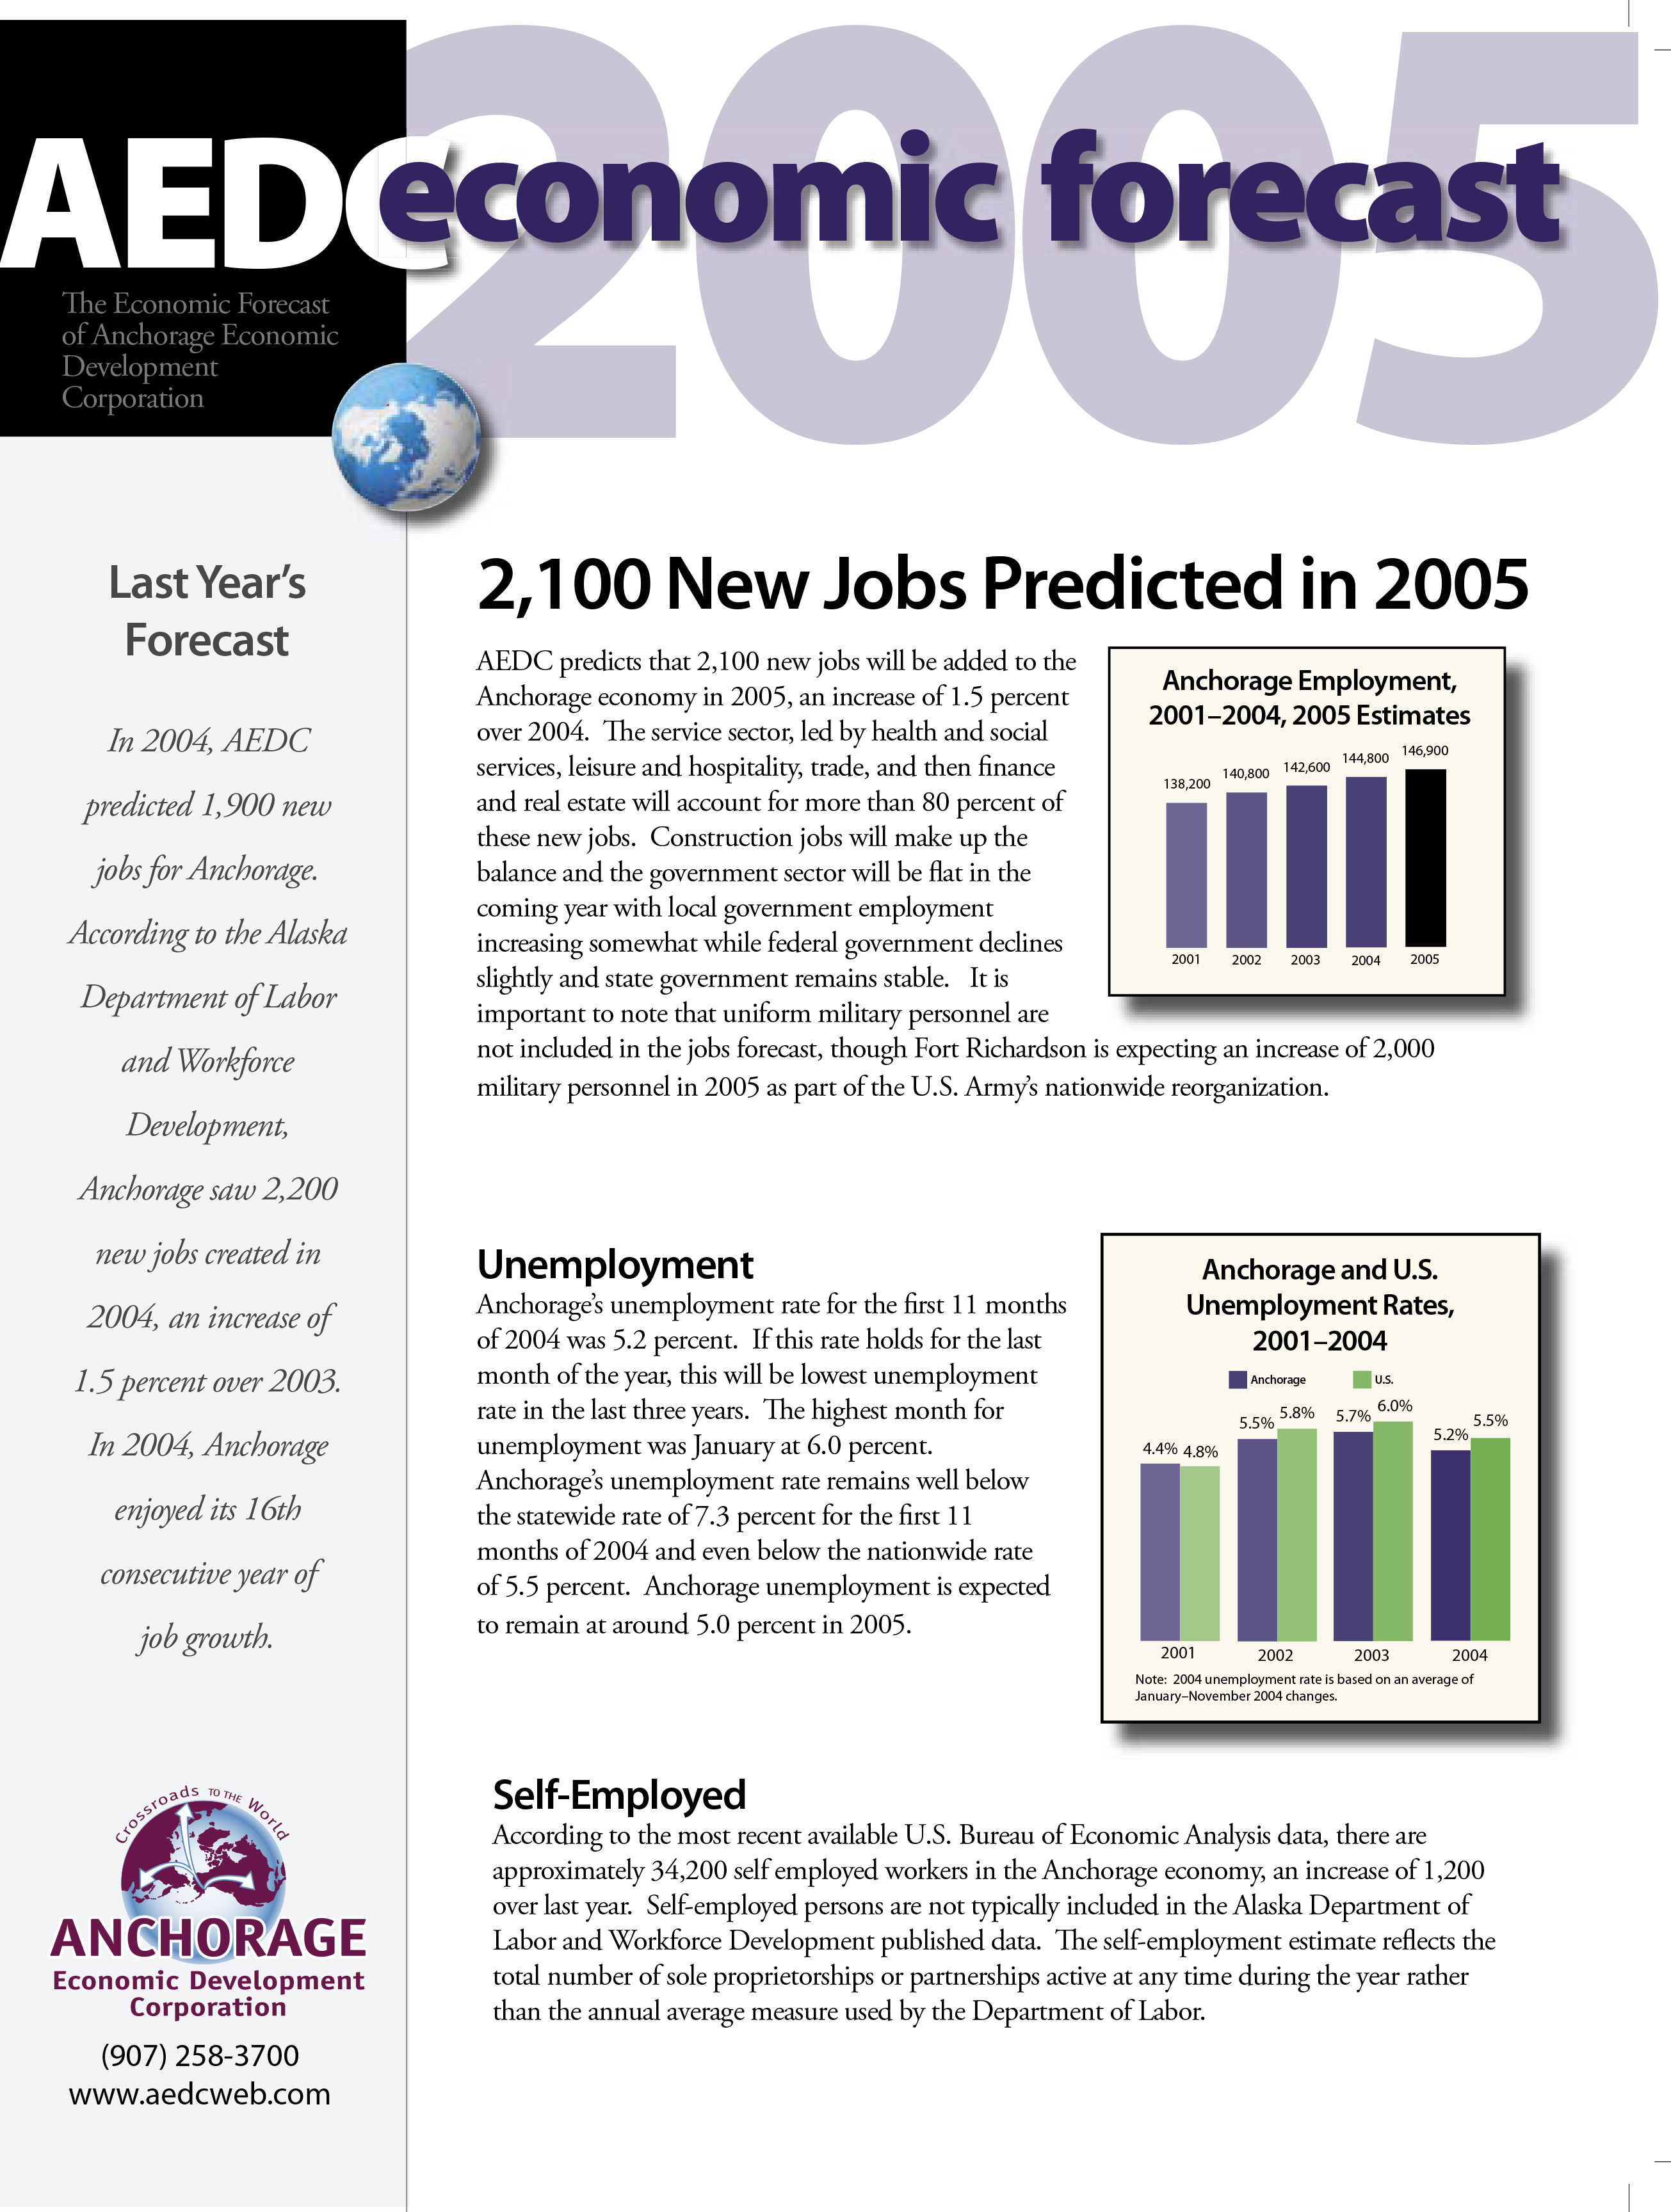 AEDC Economic Forecast Report: 2005